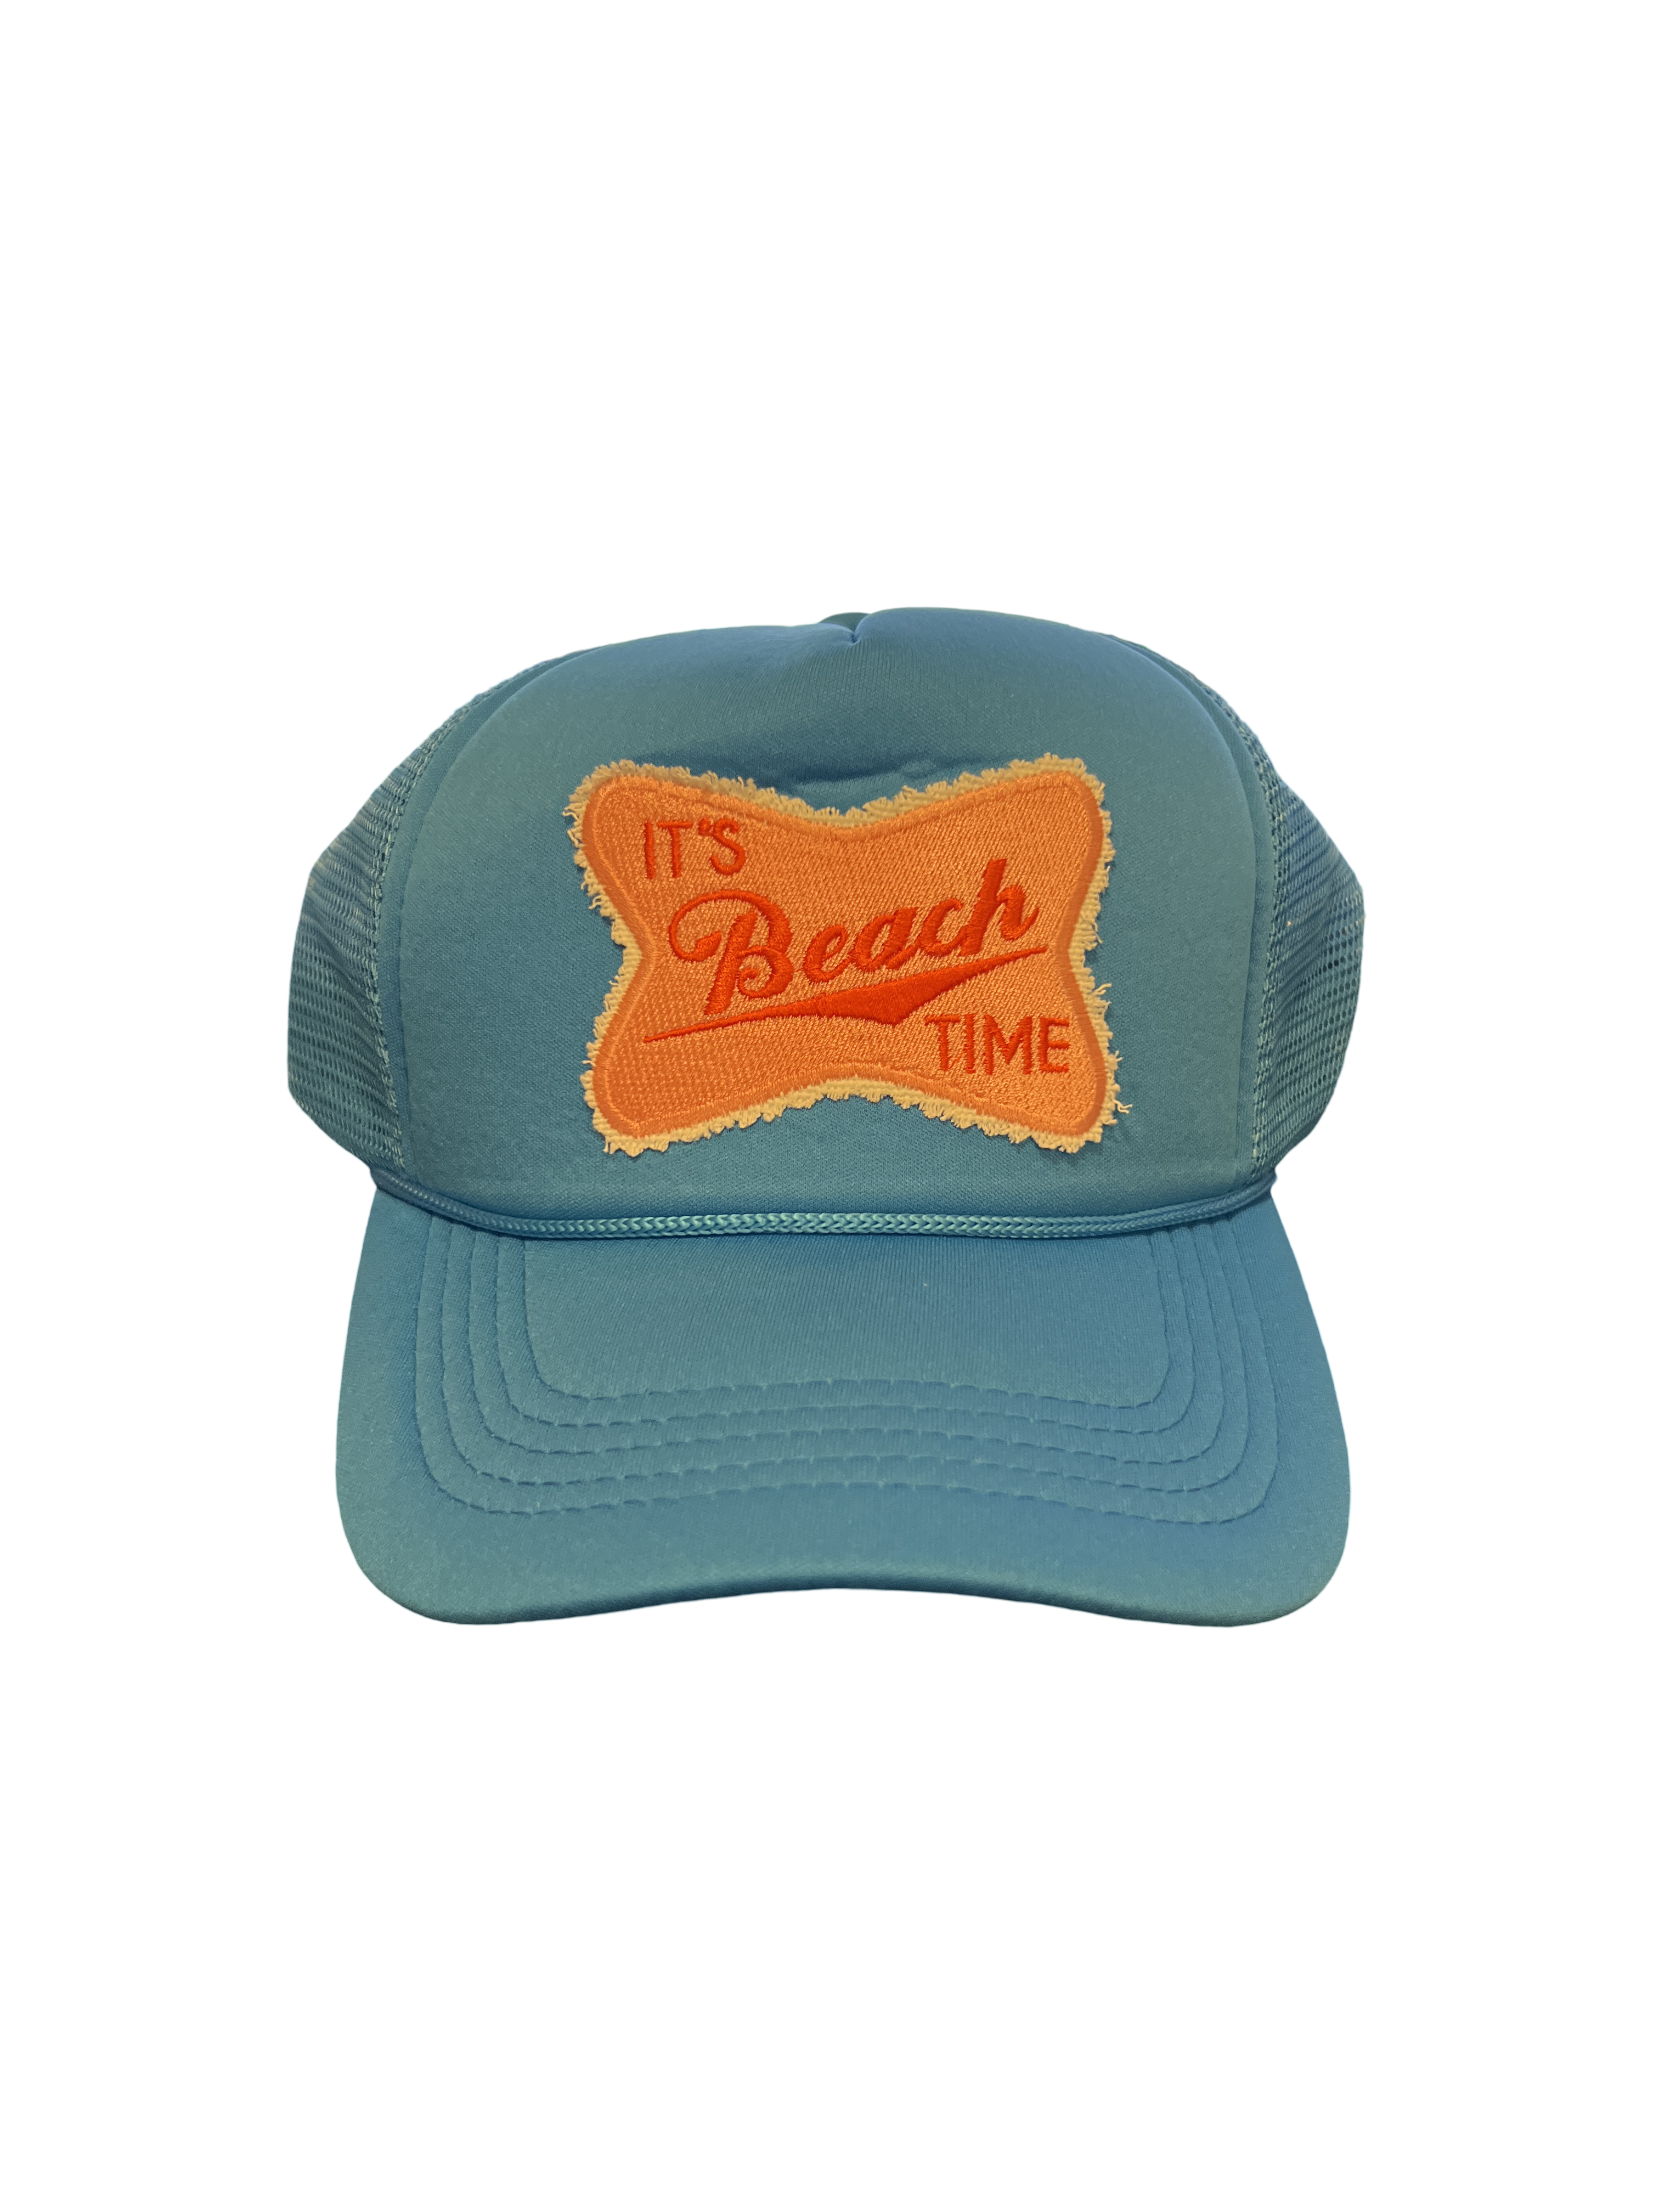 Trucker Hat Foam "It's Beach Time"